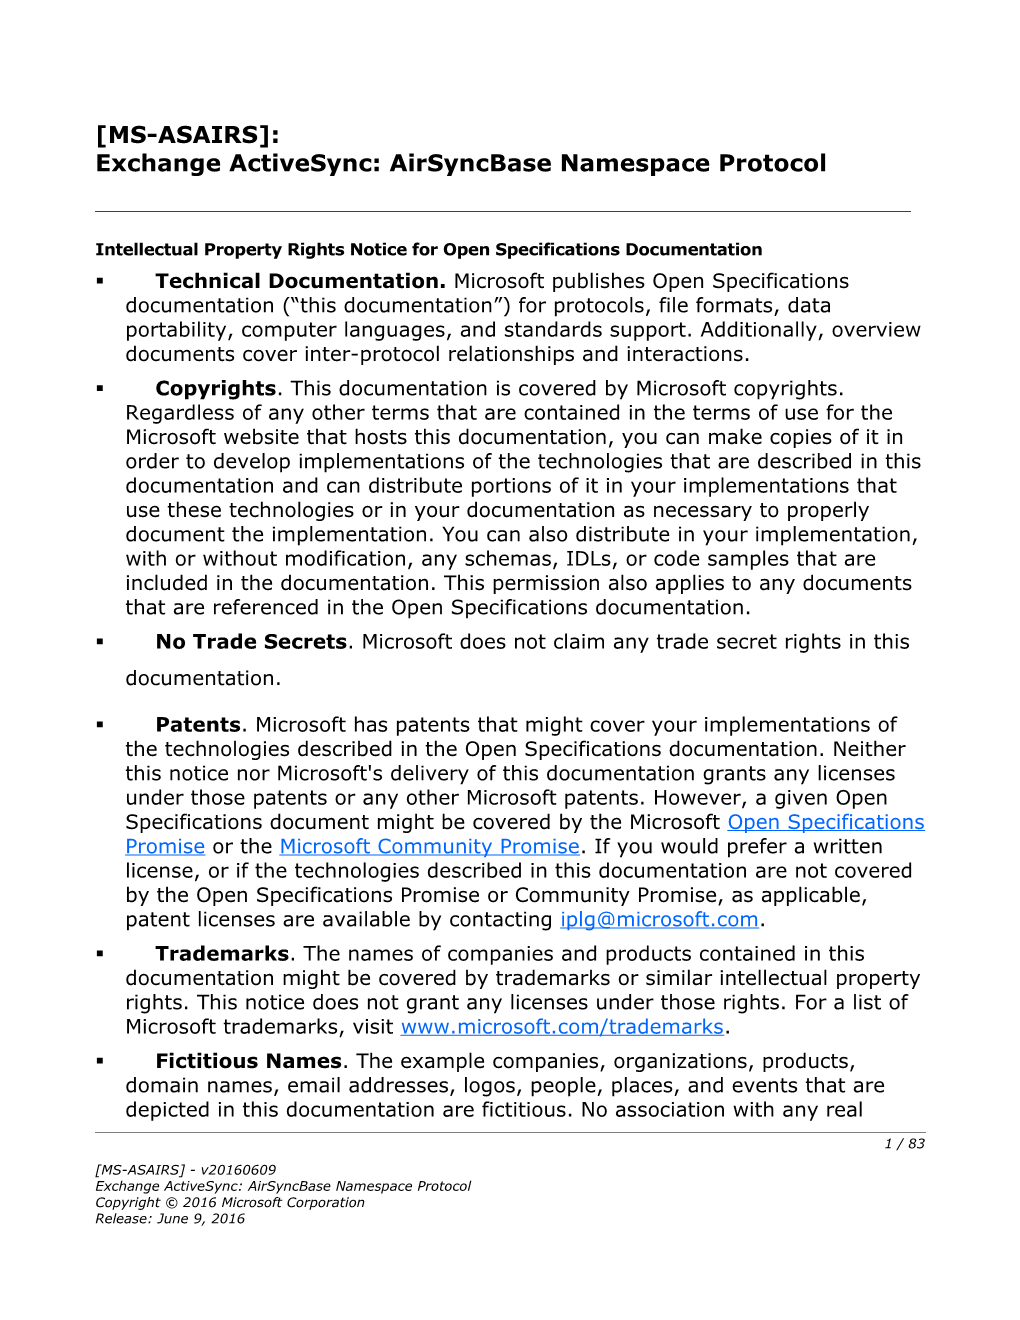 Exchange Activesync: Airsyncbase Namespace Protocol